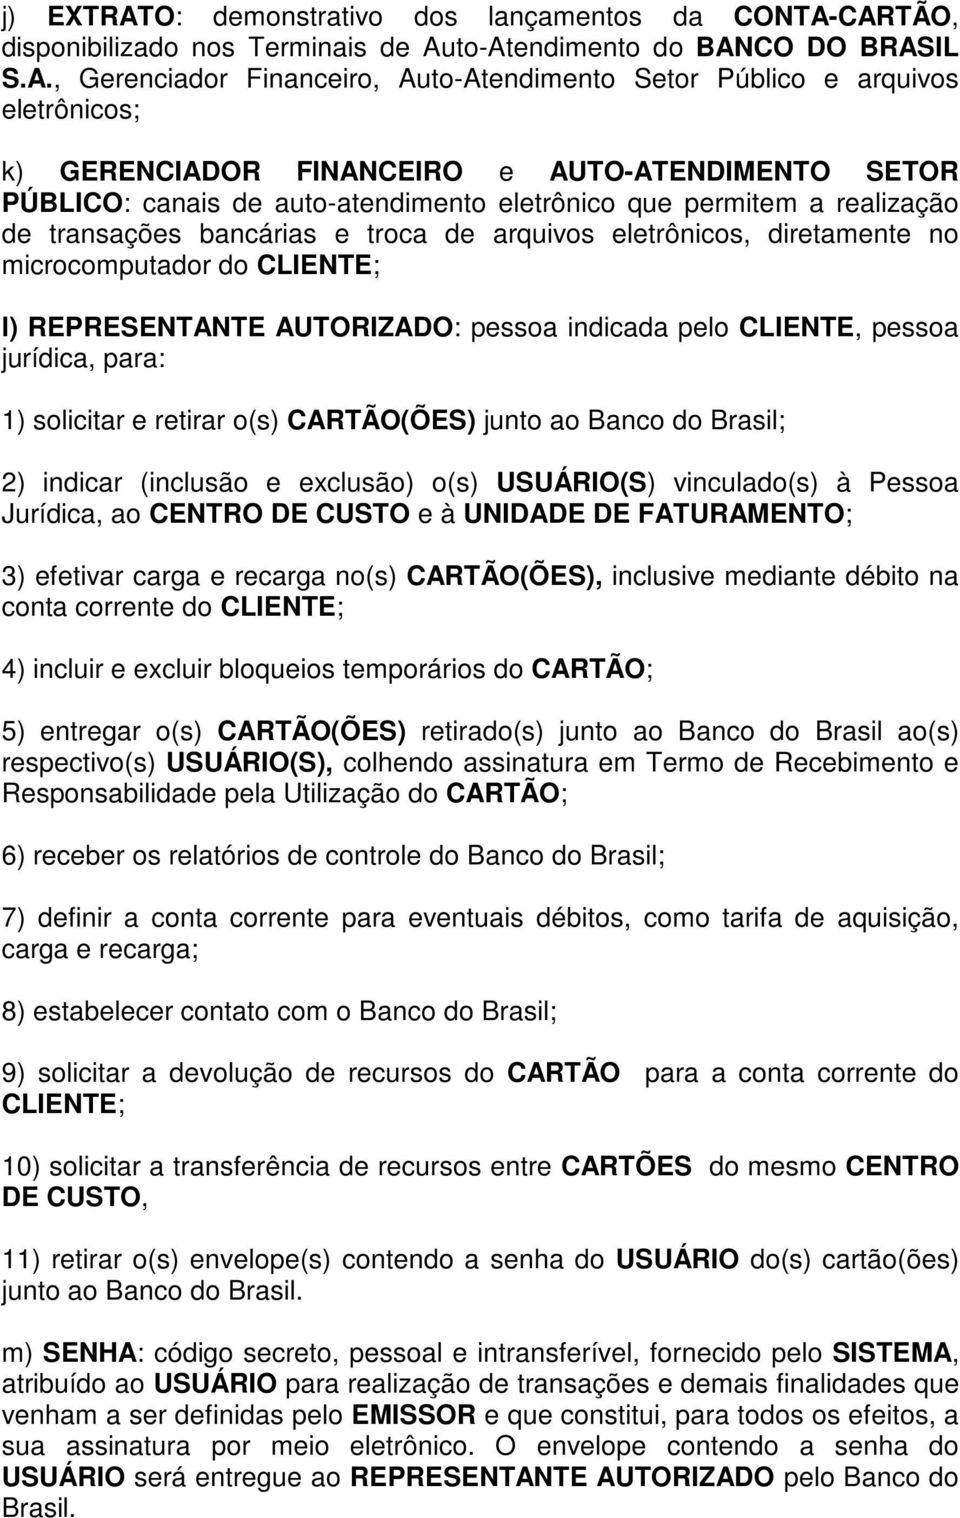 CARTÃO, disponibilizado nos Terminais de Auto-Atendimento do BANCO DO BRASIL S.A., Gerenciador Financeiro, Auto-Atendimento Setor Público e arquivos eletrônicos; k) GERENCIADOR FINANCEIRO e